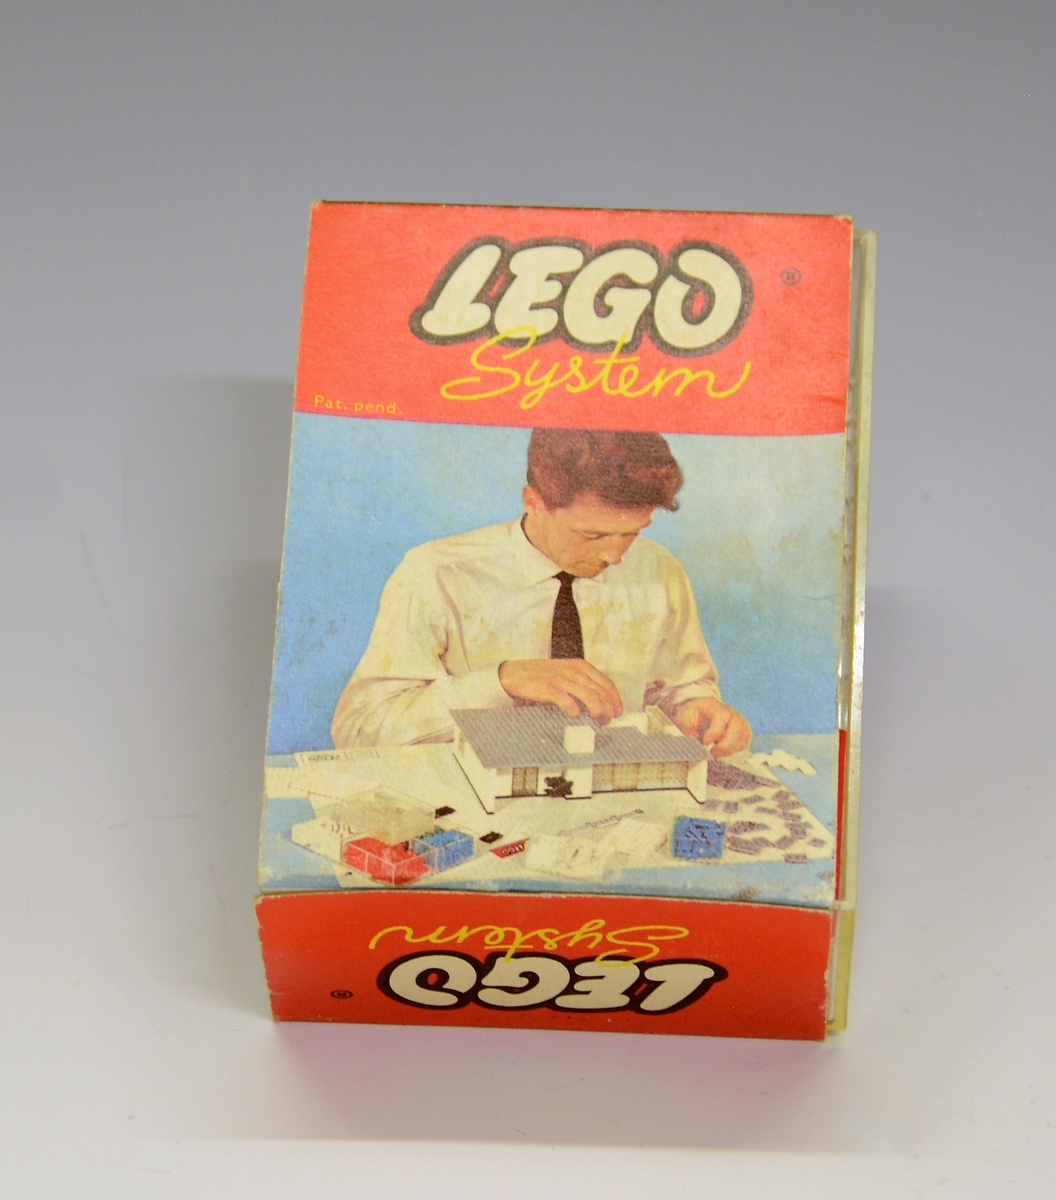 Originaleske i plastikk med "overtrekk" i papp. Ikke produsert som leketøy i utgangspunktet - bildet på esken viser en mann som bygger en modell av et hus i Lego.